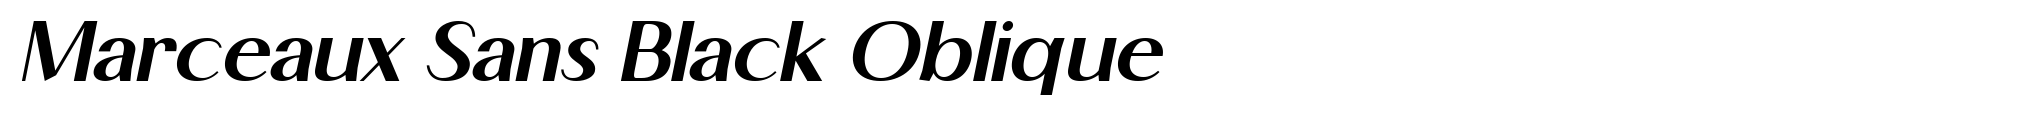 Marceaux Sans Black Oblique image